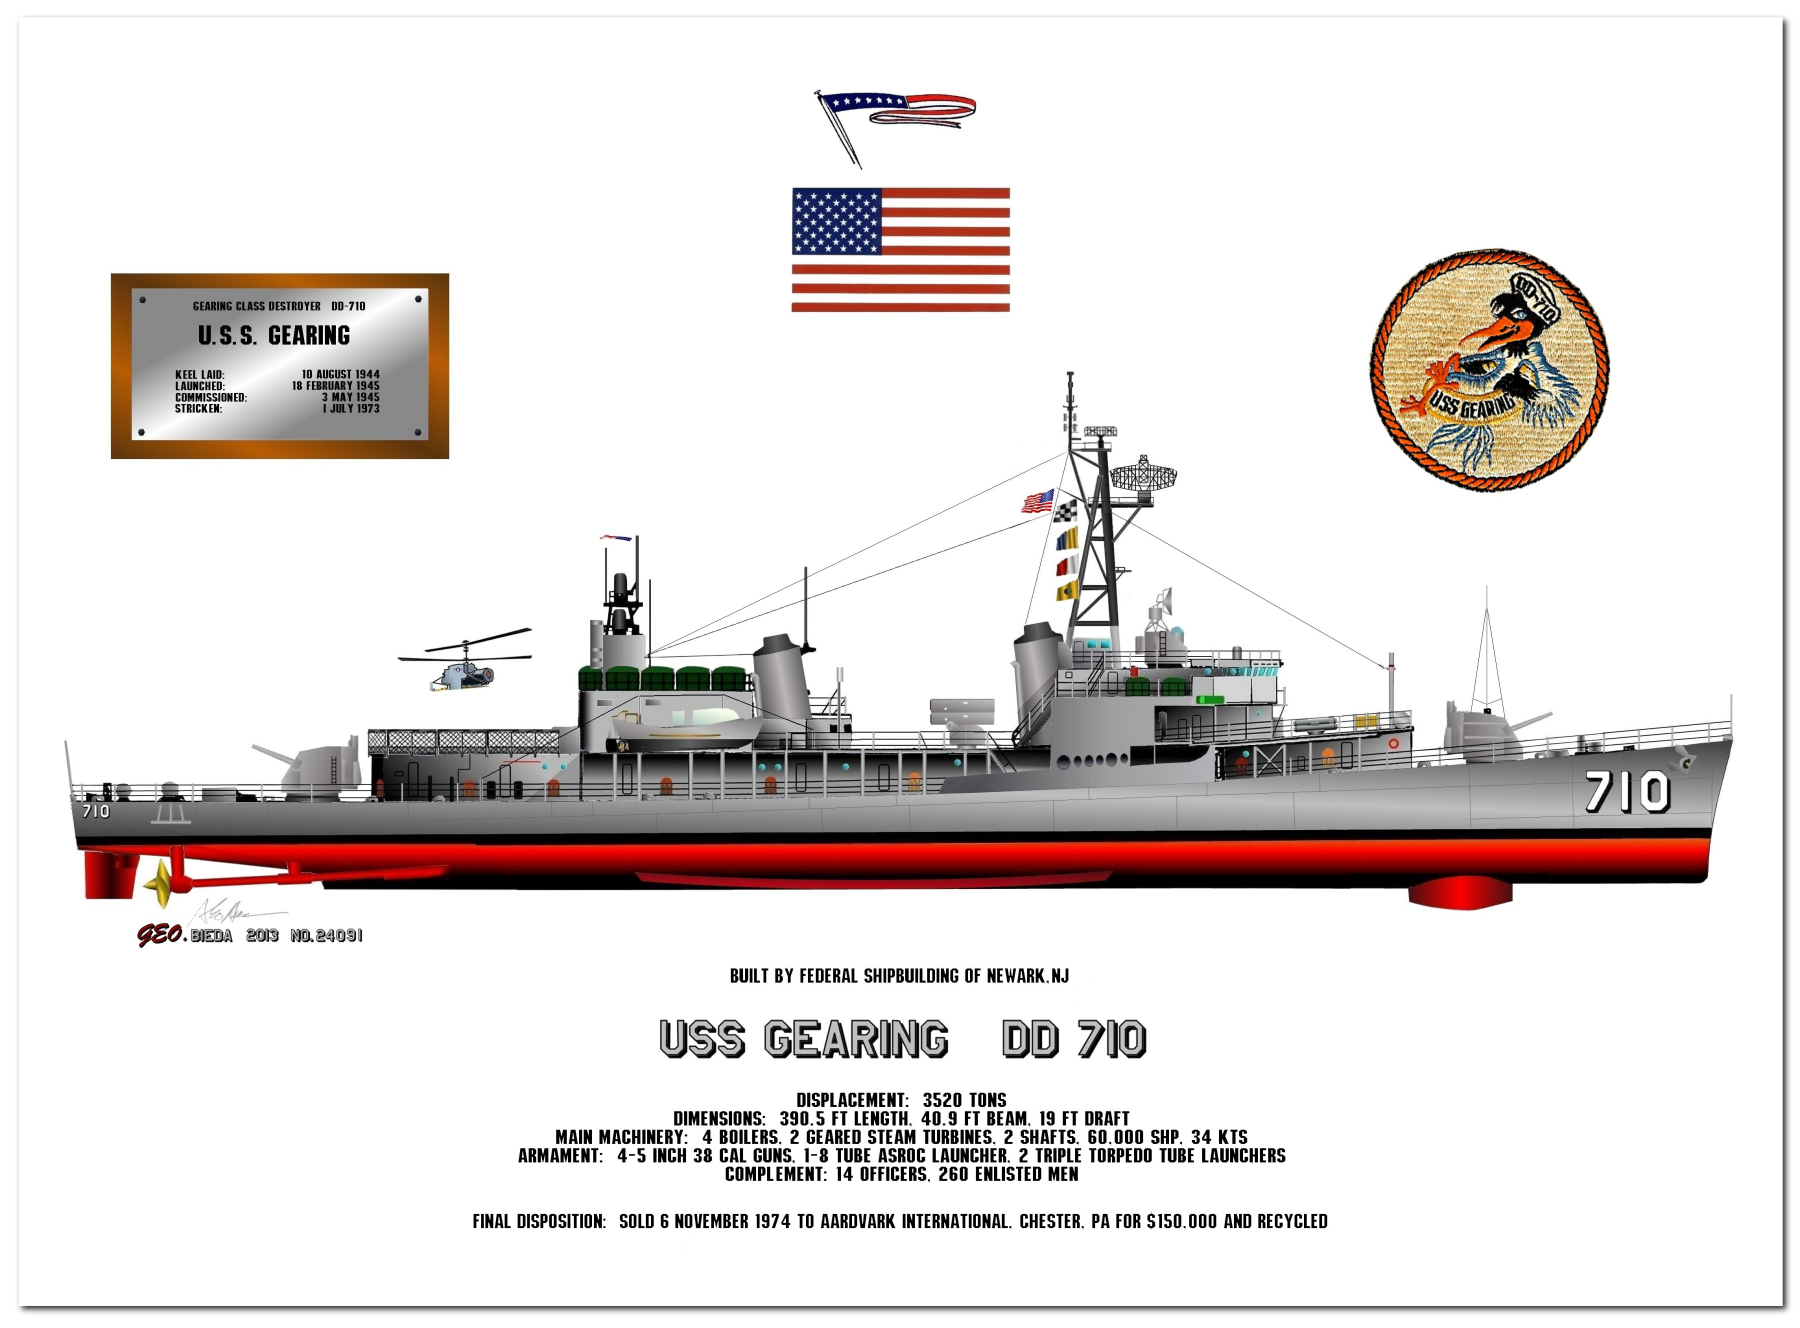 Gearing Class Destroyer Profile Drawings by George Bieda